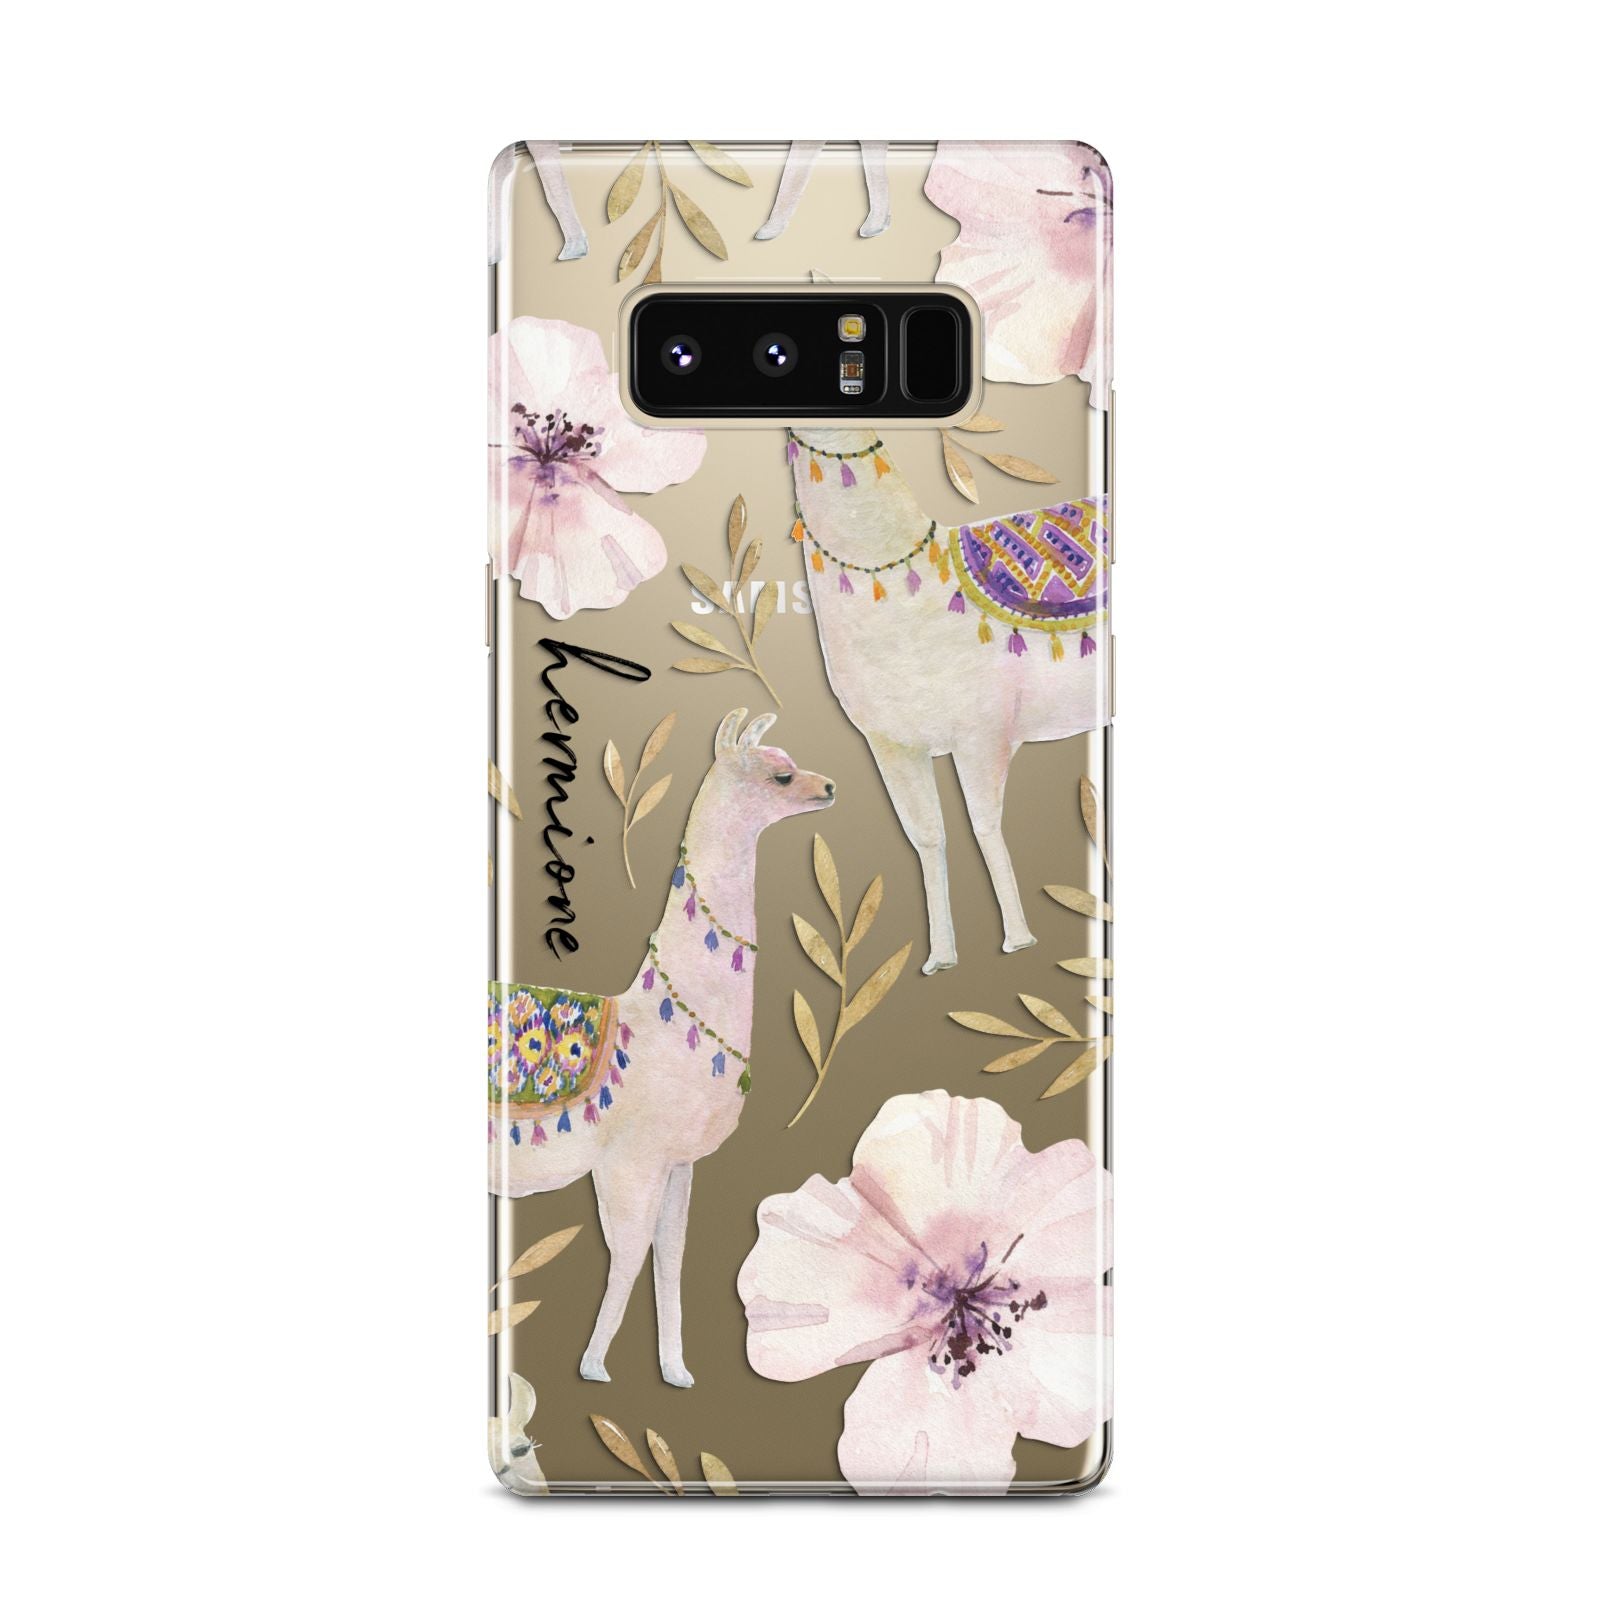 Personalised Llamas Samsung Galaxy Note 8 Case